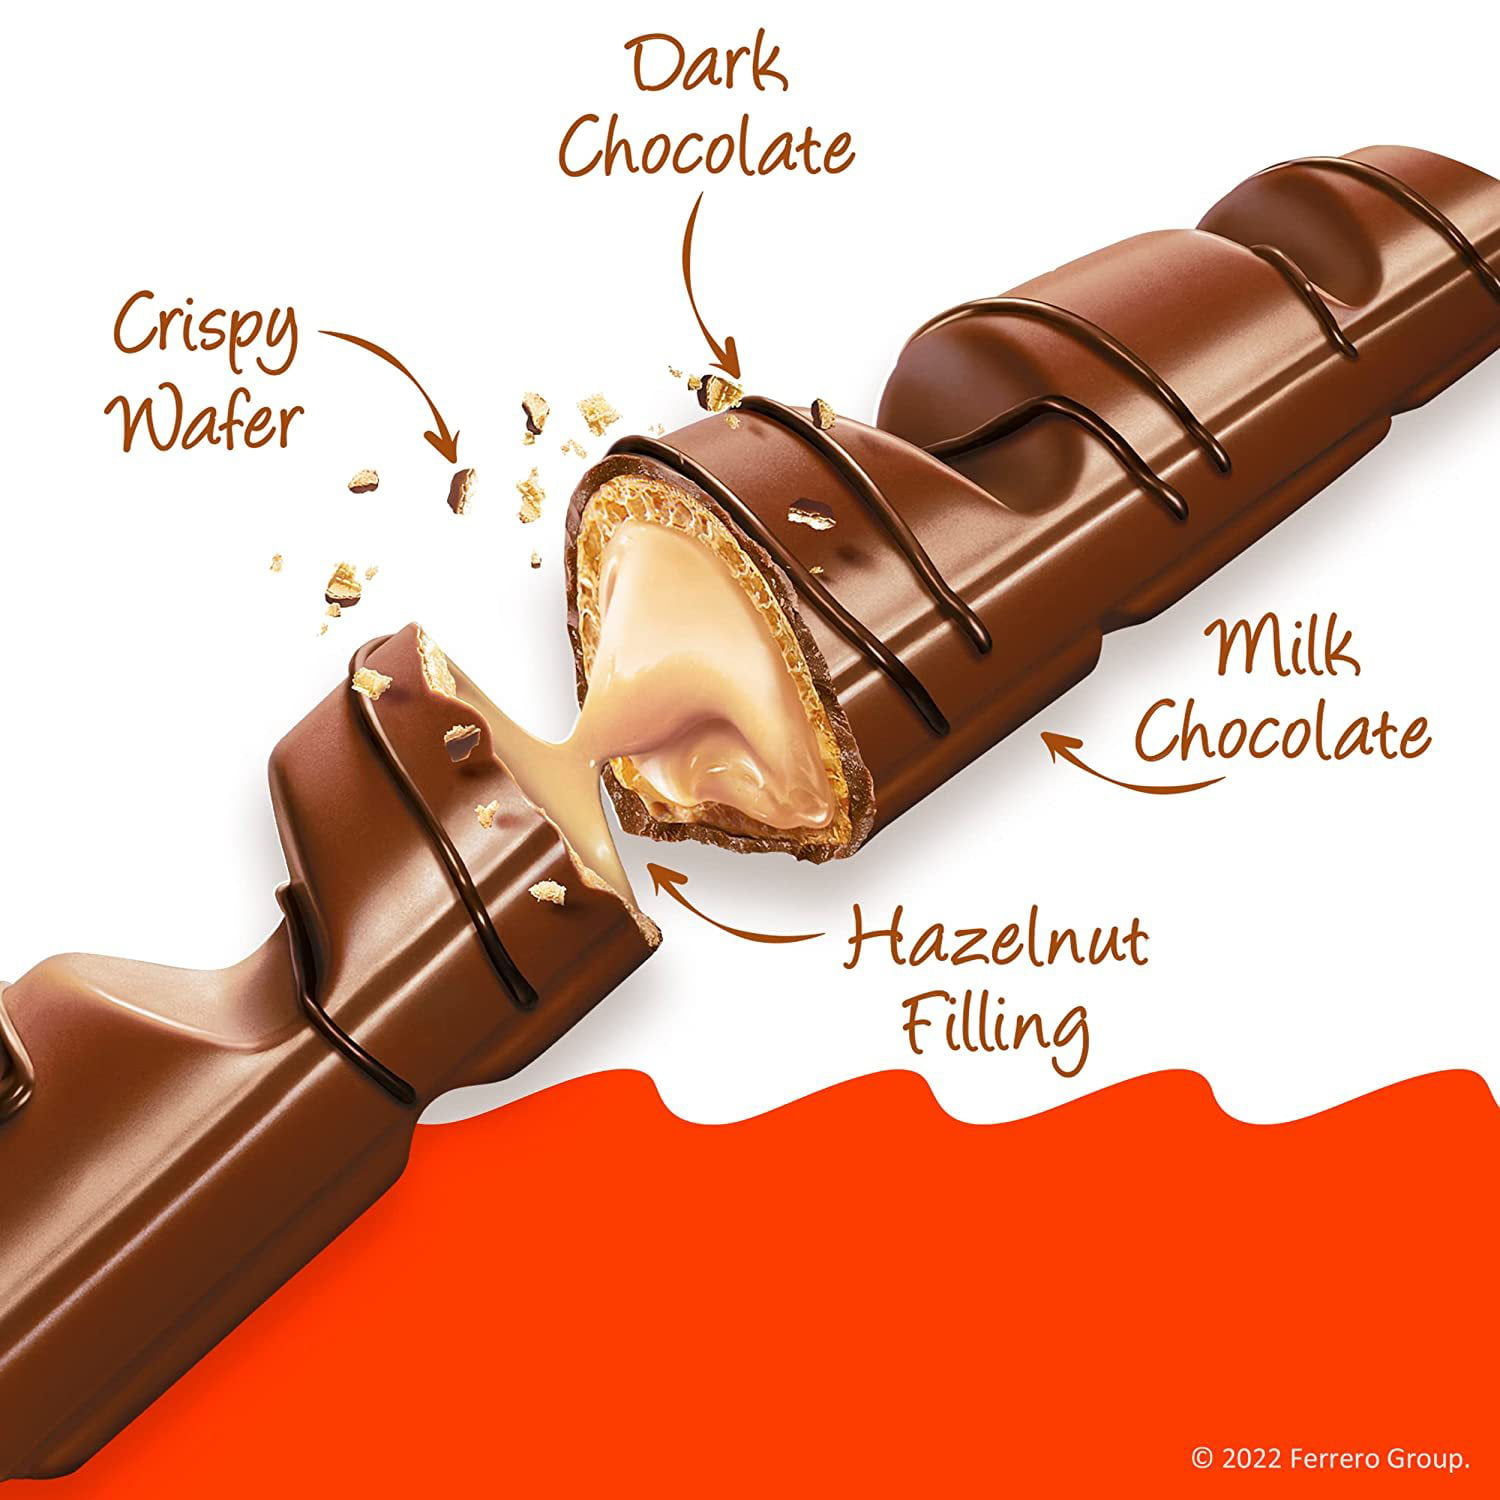 12 Packs Kinder Bueno Milk Chocolate Hazelnut — 18.20 oz 516 g